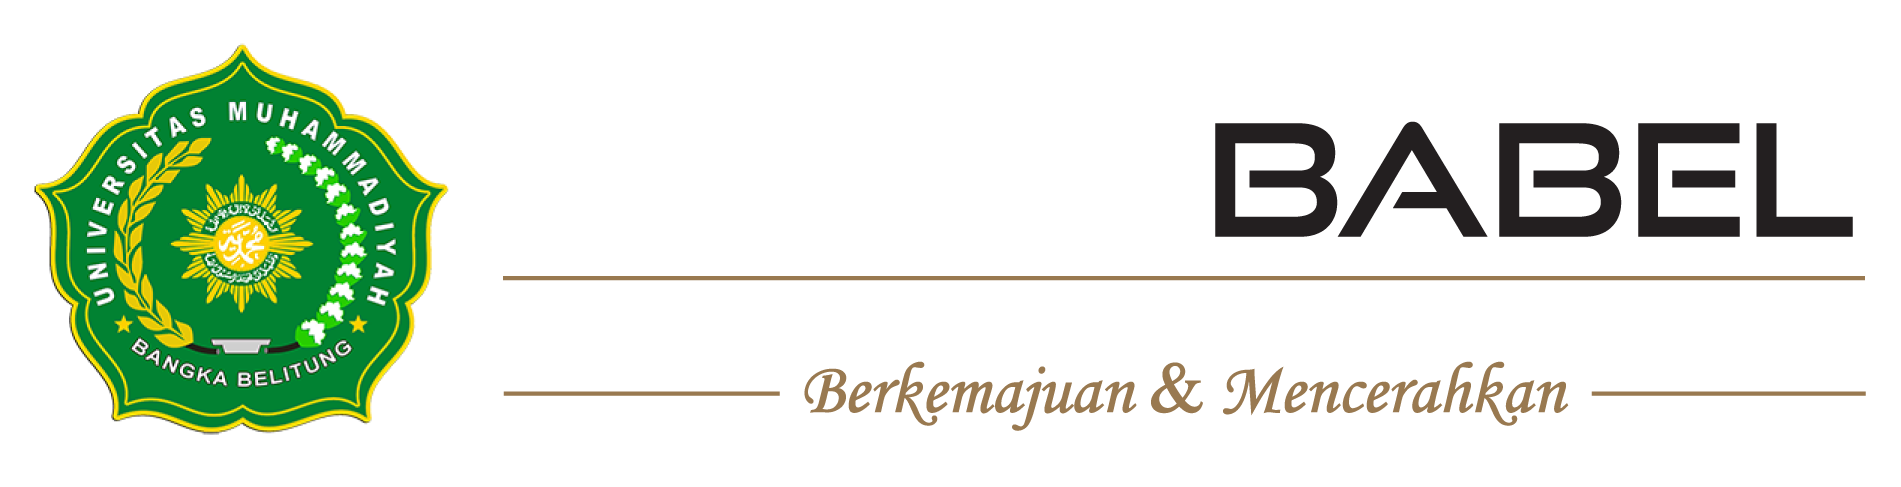 Logo-UNMUH-BABEL-Universitas-Muhammadiyah-Bangka-Belitung-2